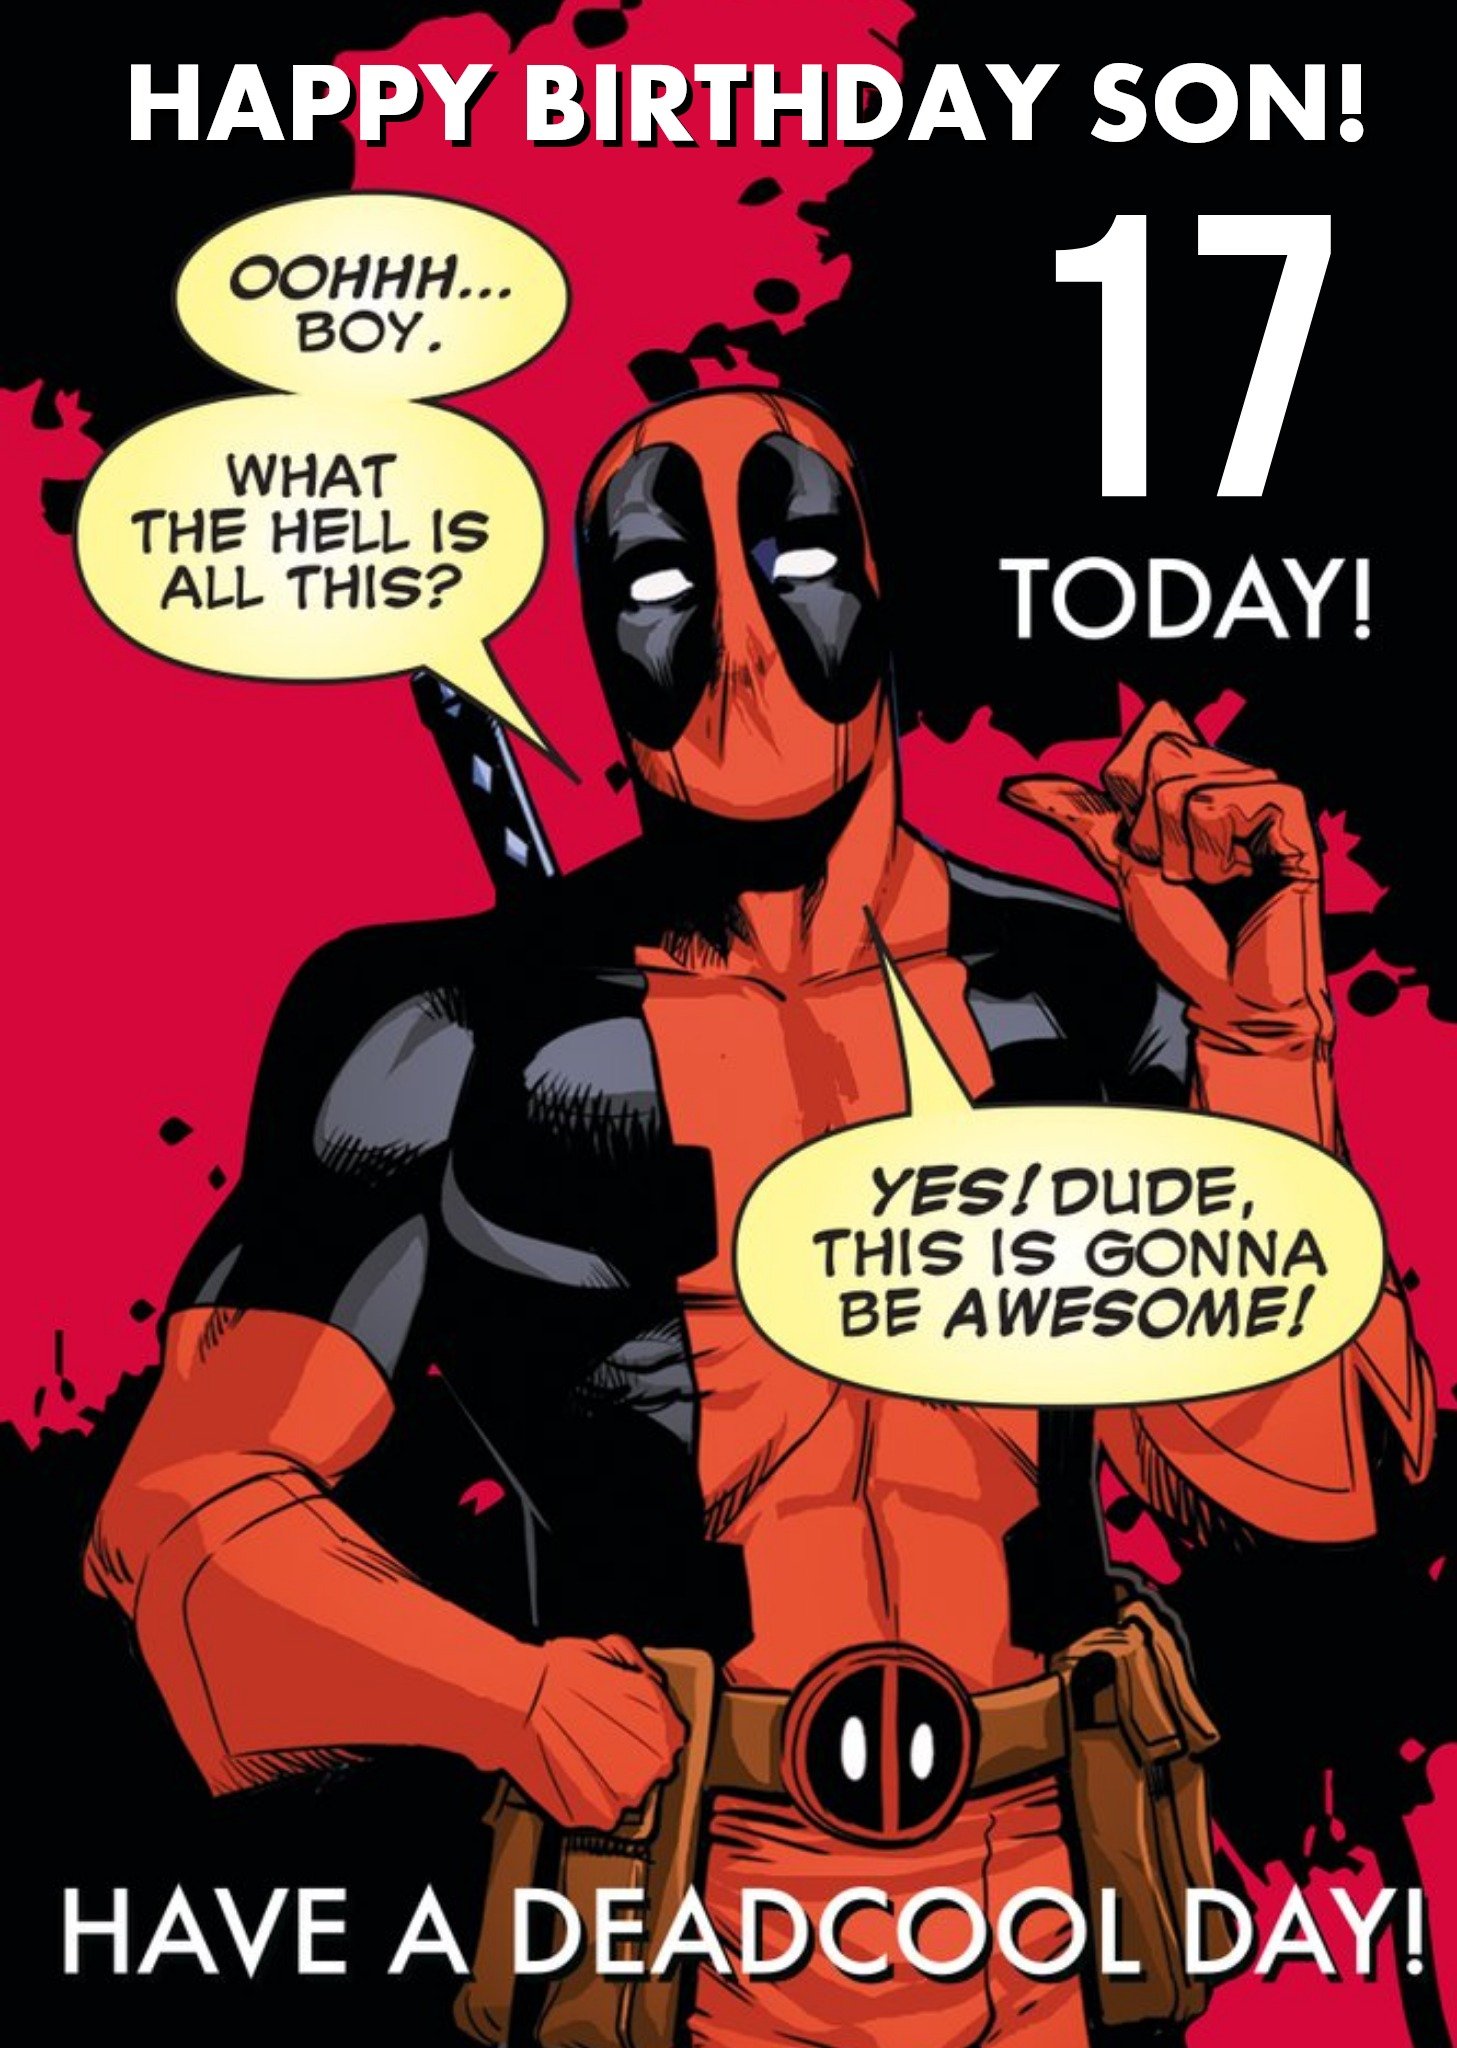 Marvel Funny Deadpool 17th Birthday Card For Your Son Ecard